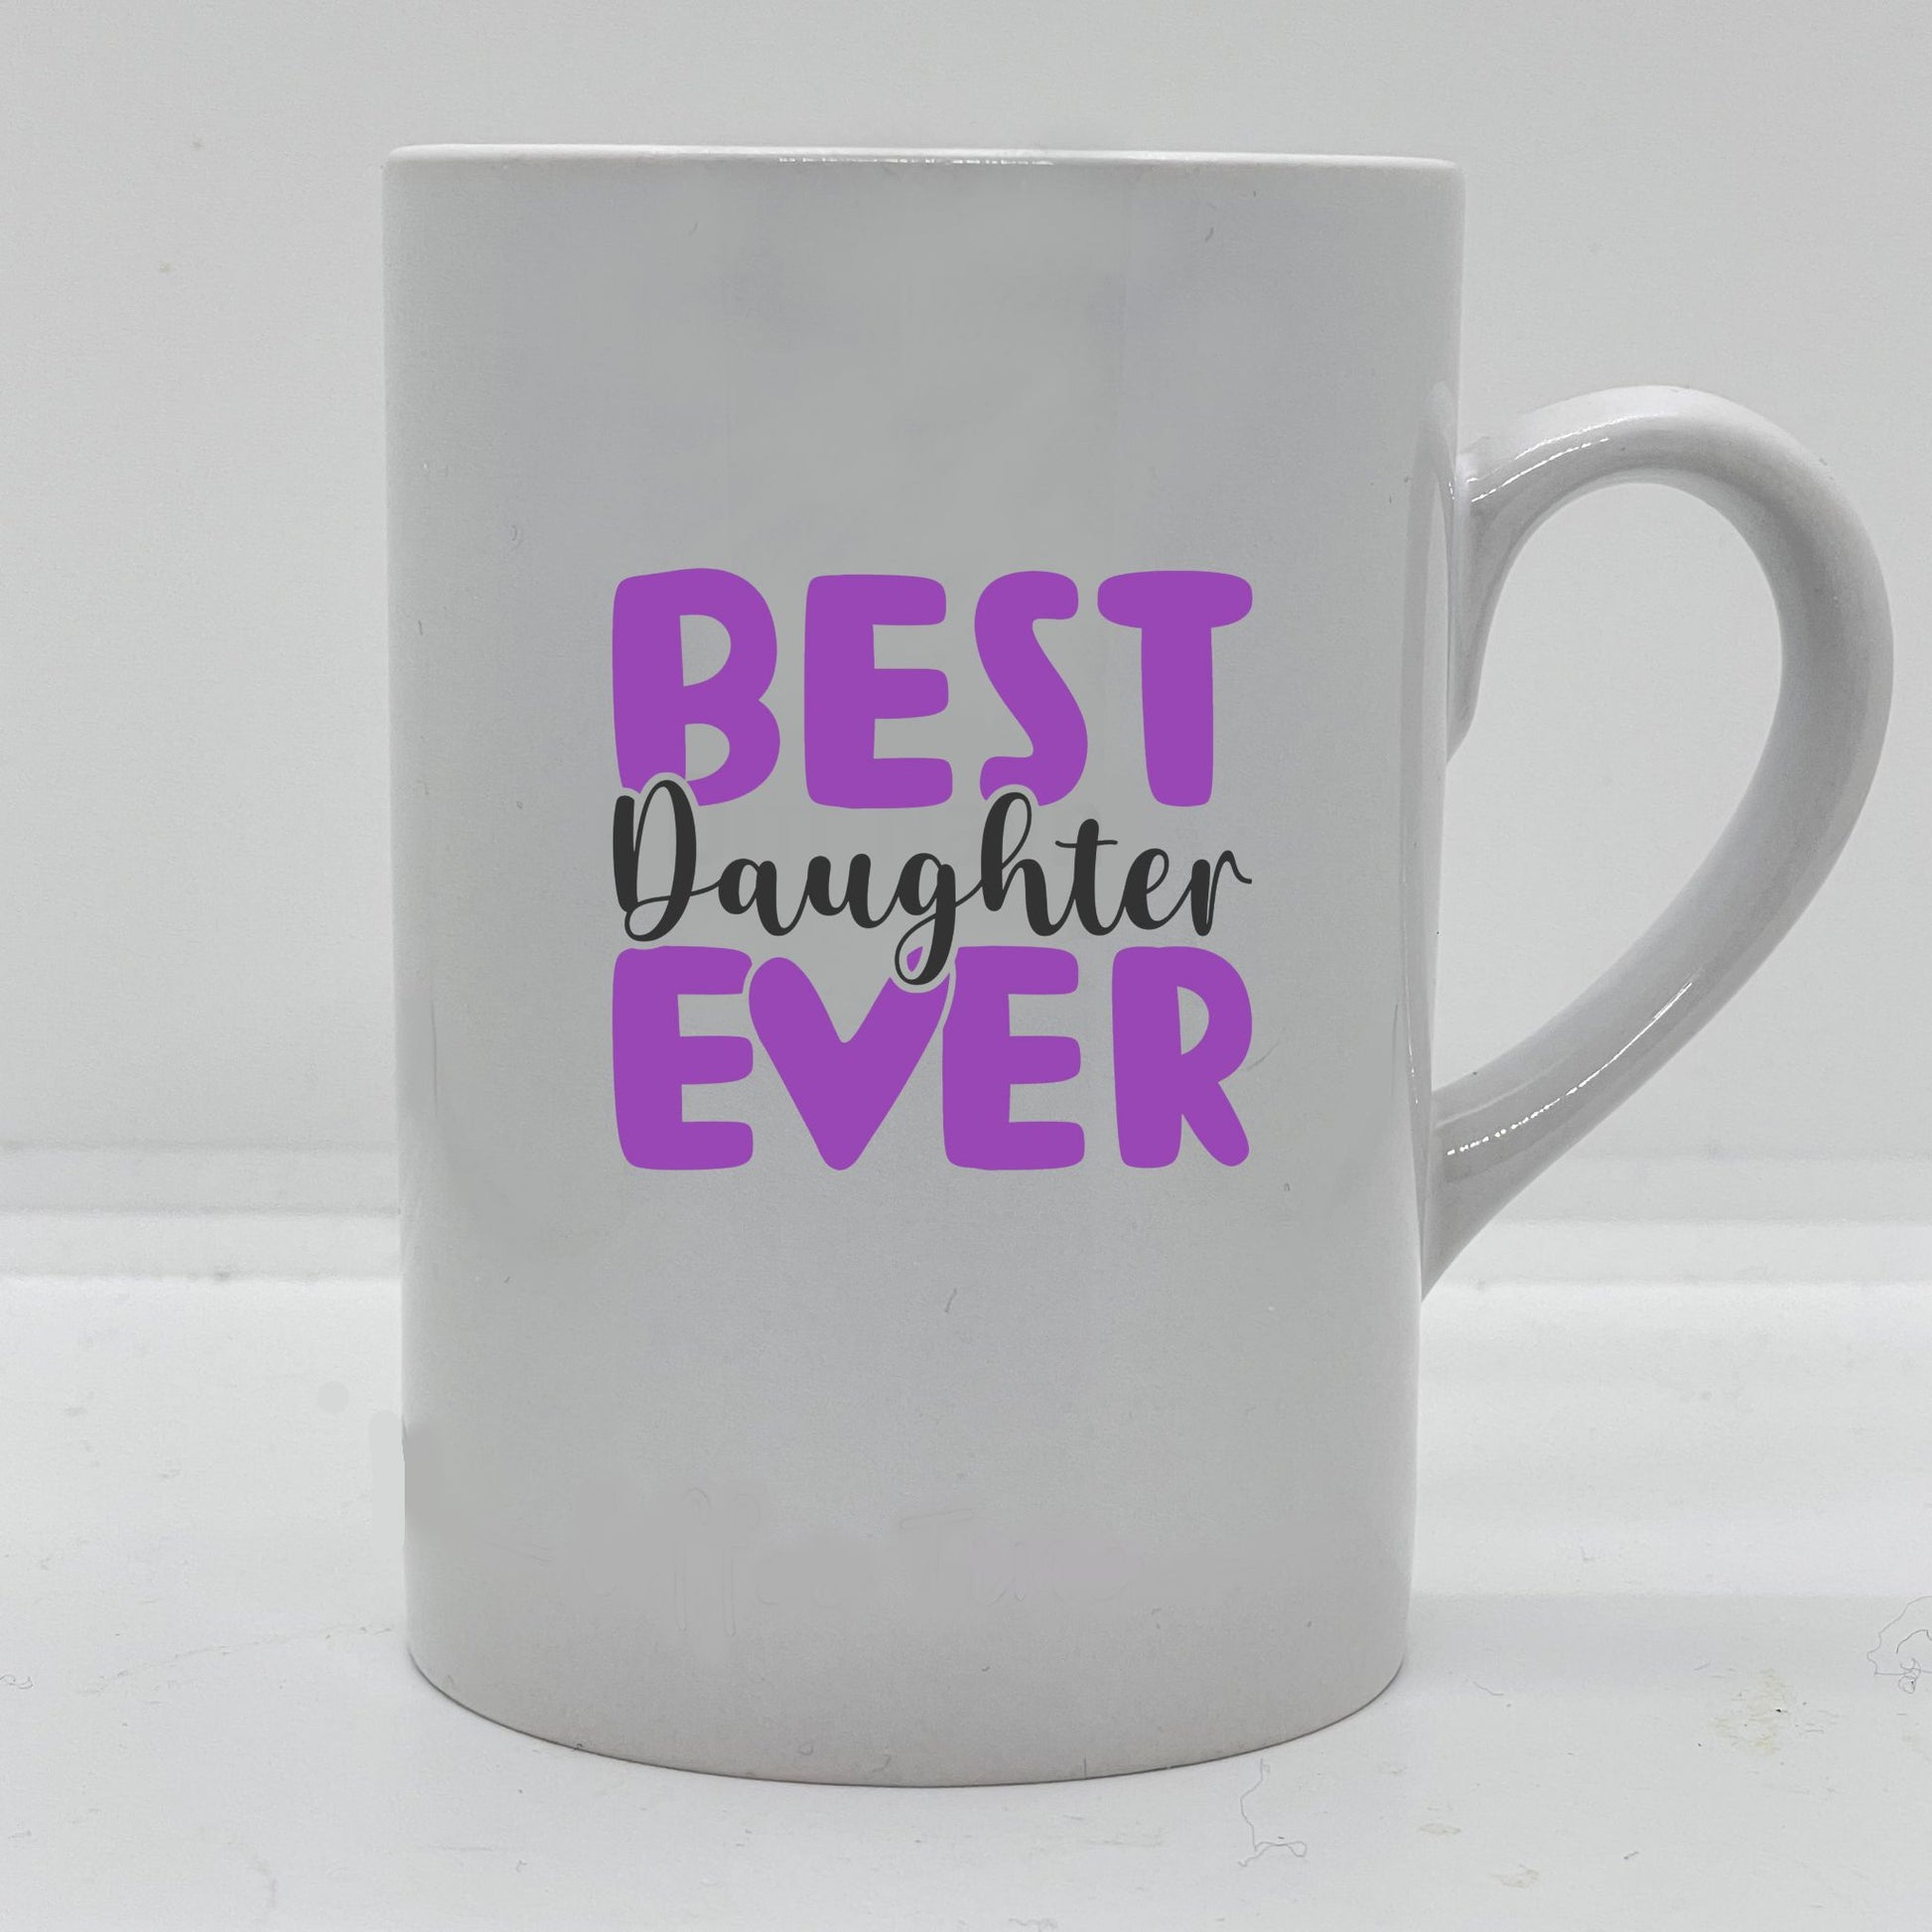 Krus i hvit keramikk med påskrift "Best daughter ever" på en side, og tre hjerter på motsatt side. Trykk o sort og lilla.